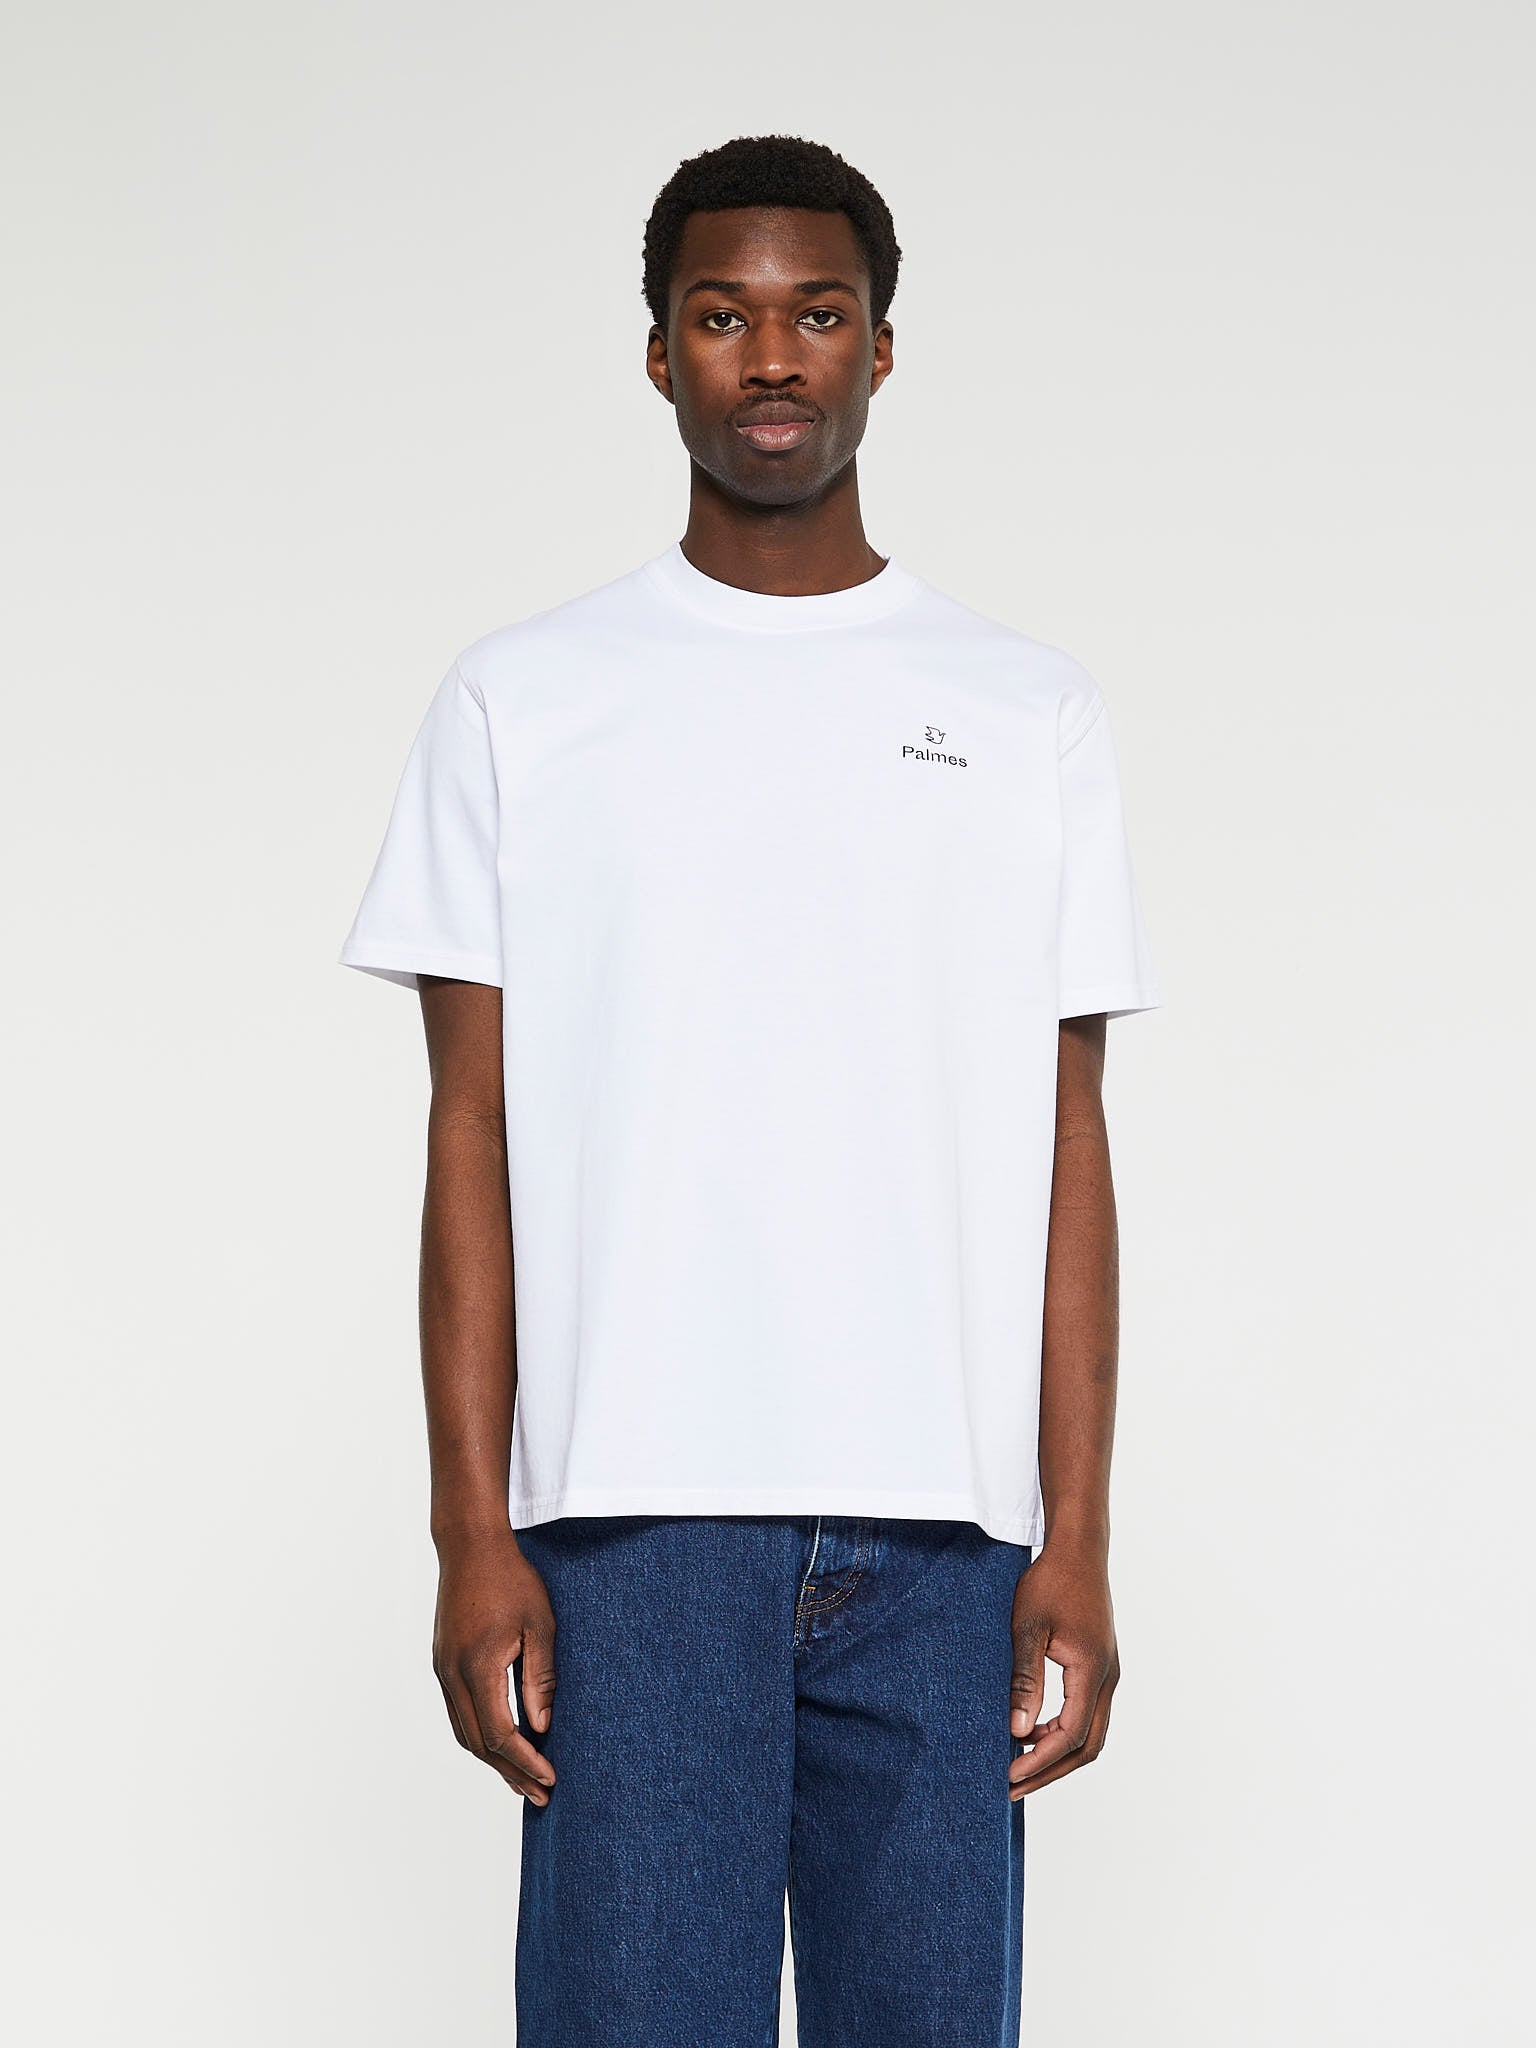 Palmes - Allan T-Shirt in White